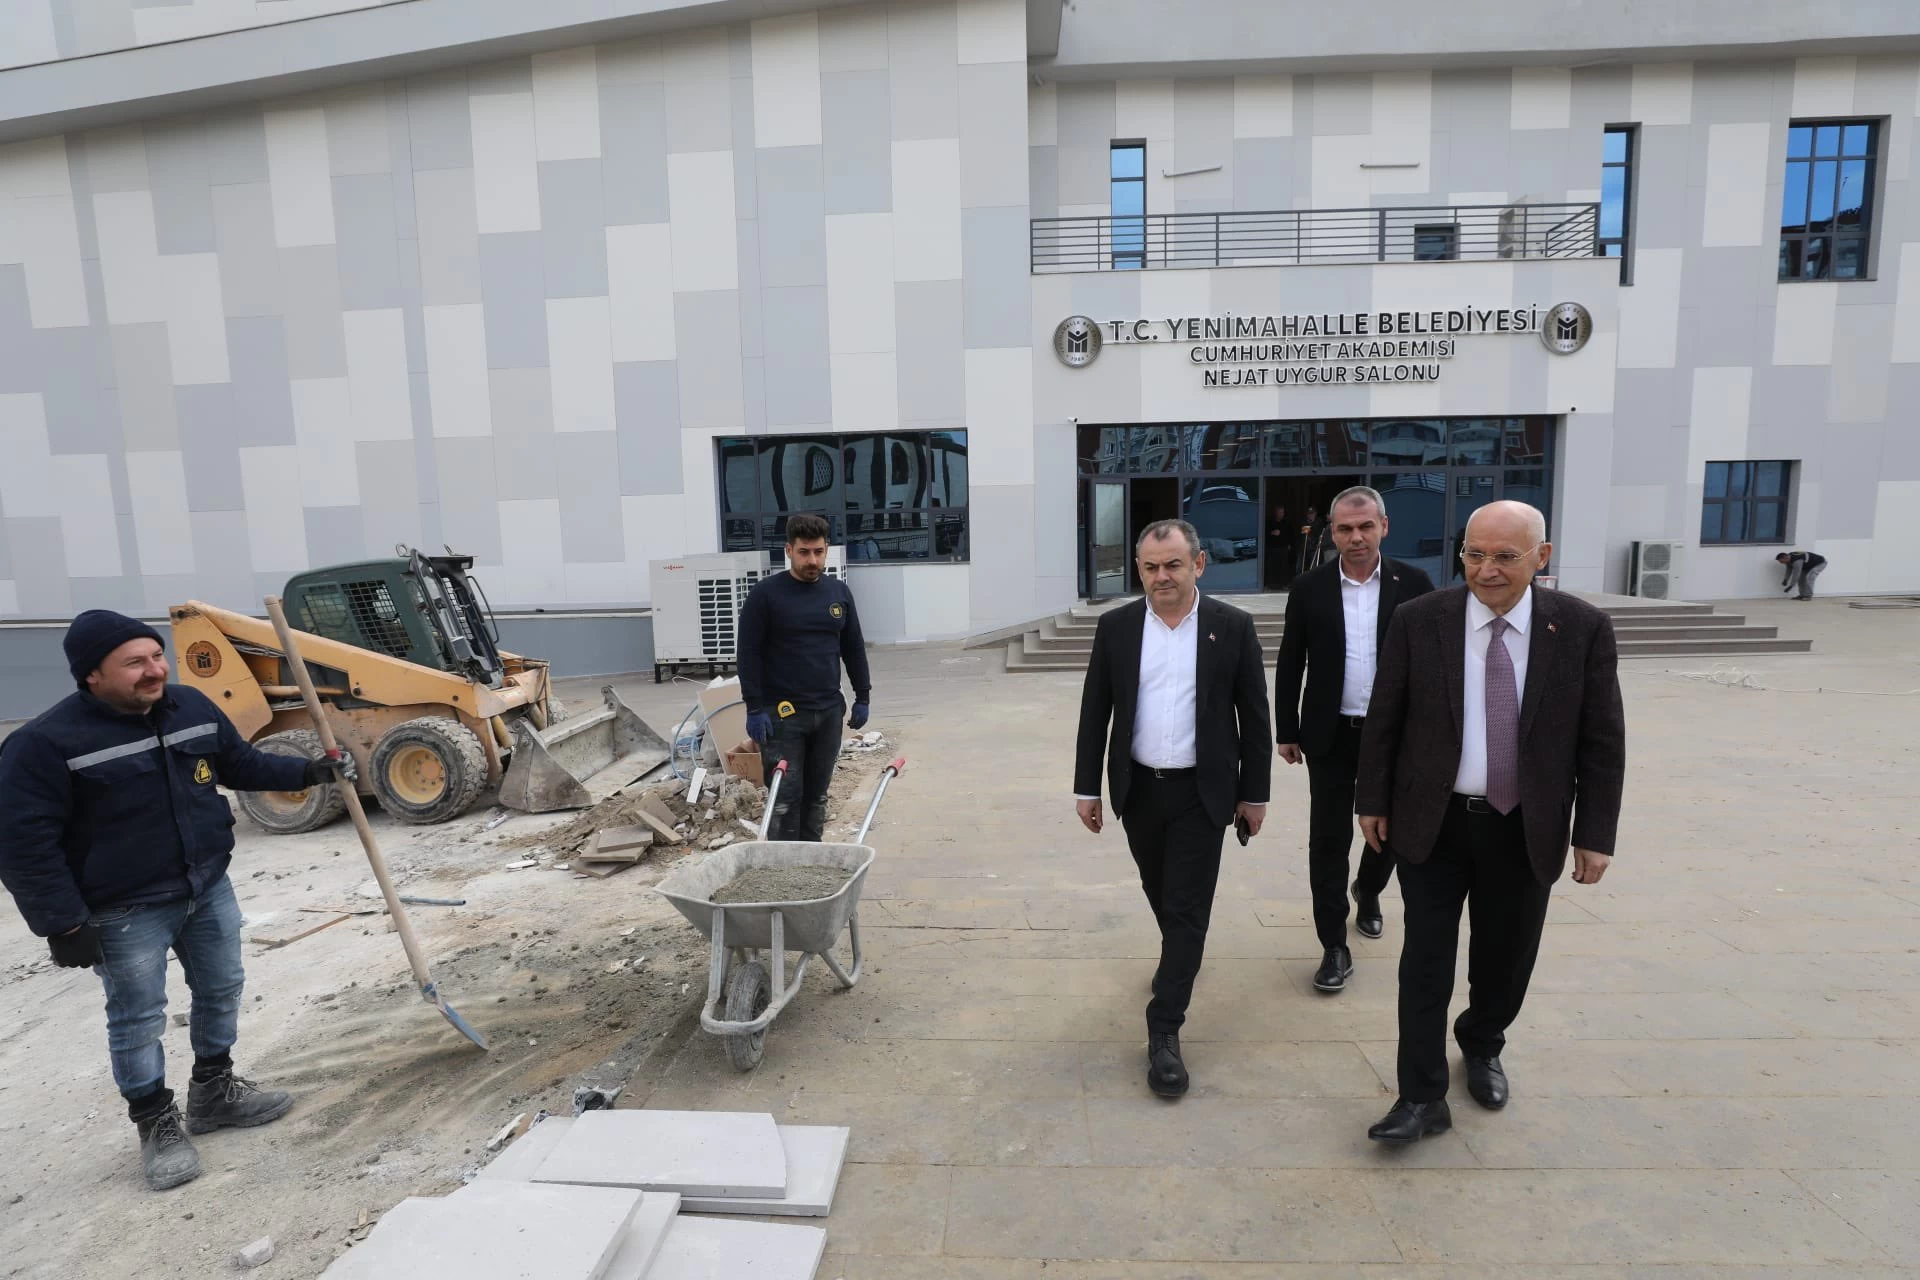 Yenimahalle Belediye Başkanı Fethi Yaşar Cumhuriyet Akademisi inşaatında gelinen son durumu paylaştı